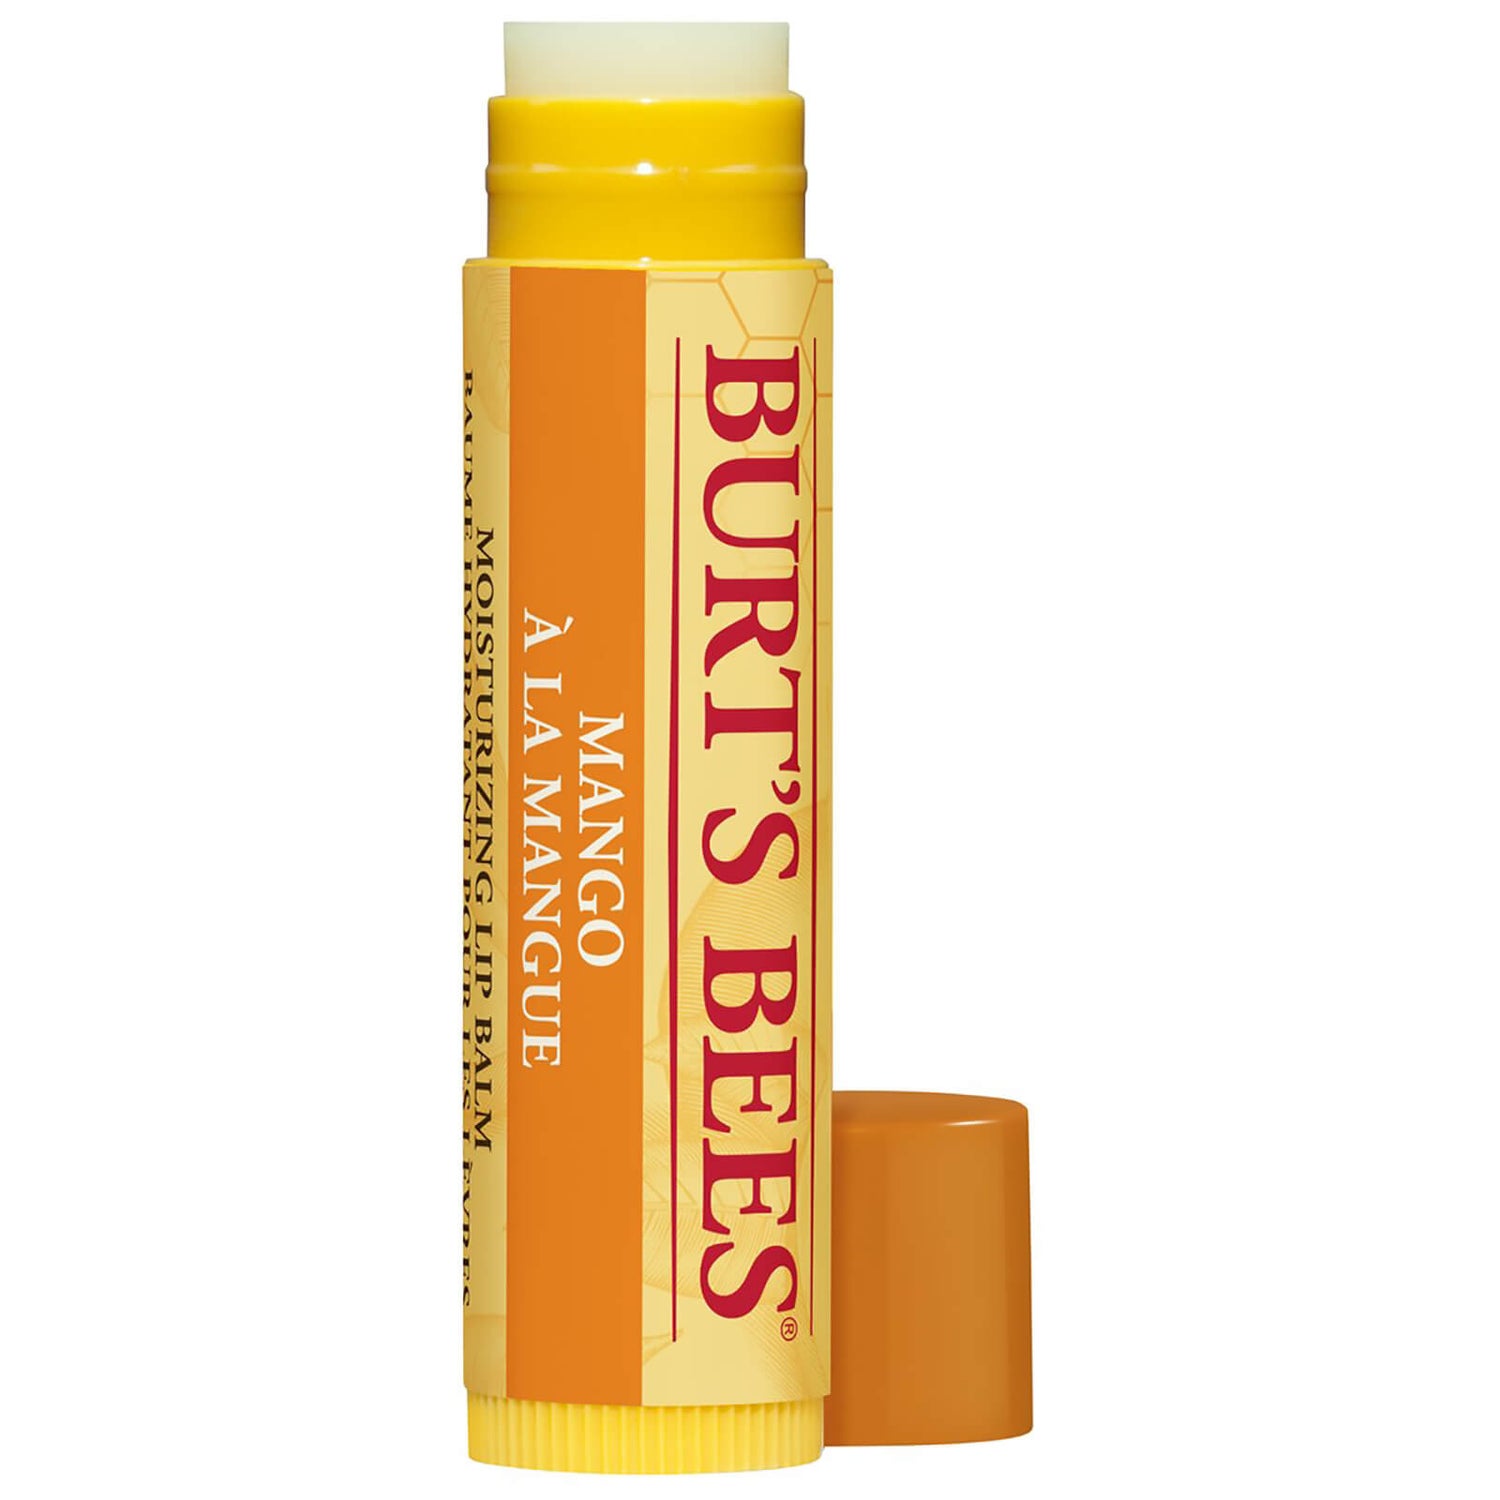 Burts Bees Lip Balm - Mango Lip Balm Tubes 4.25g